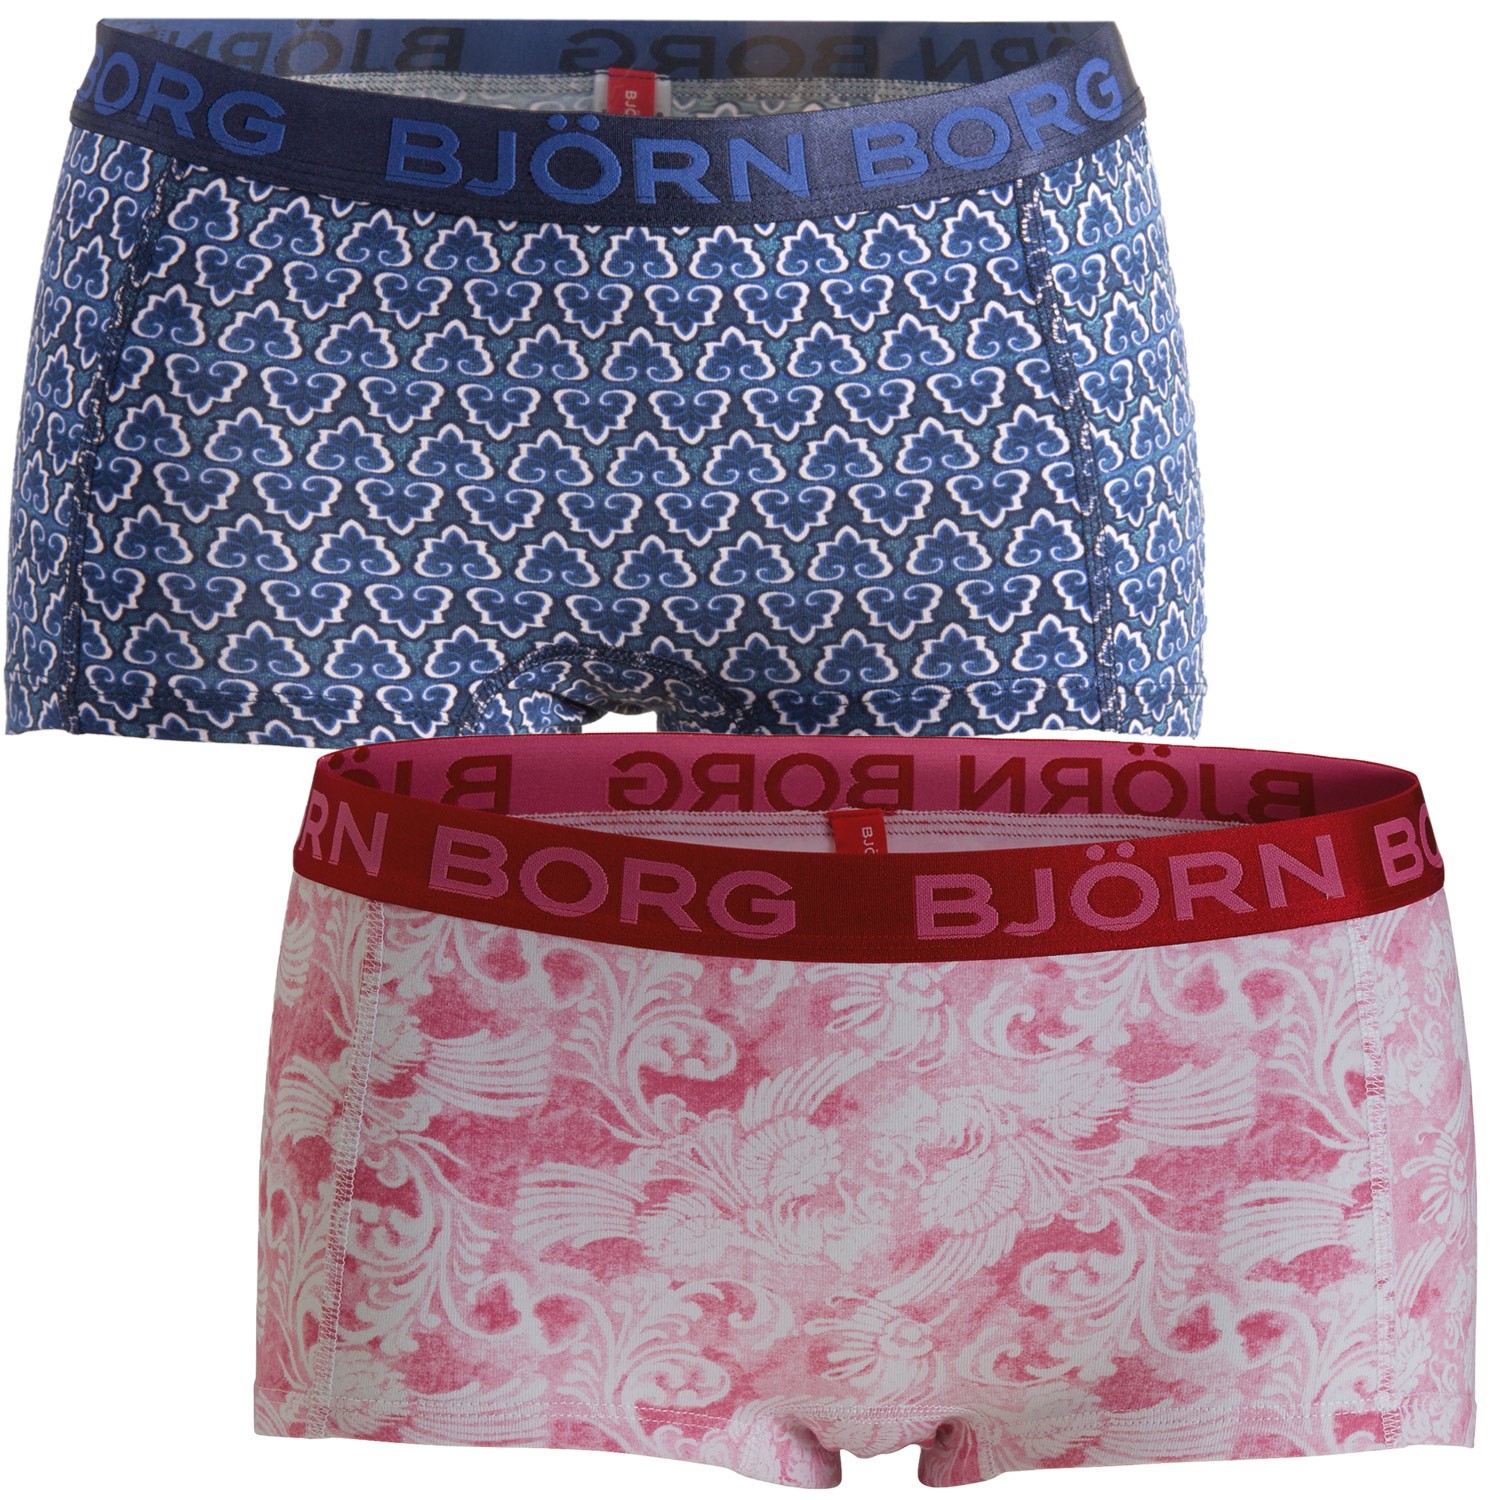 Björn Borg Mini Shorts For Her Phlox Pink